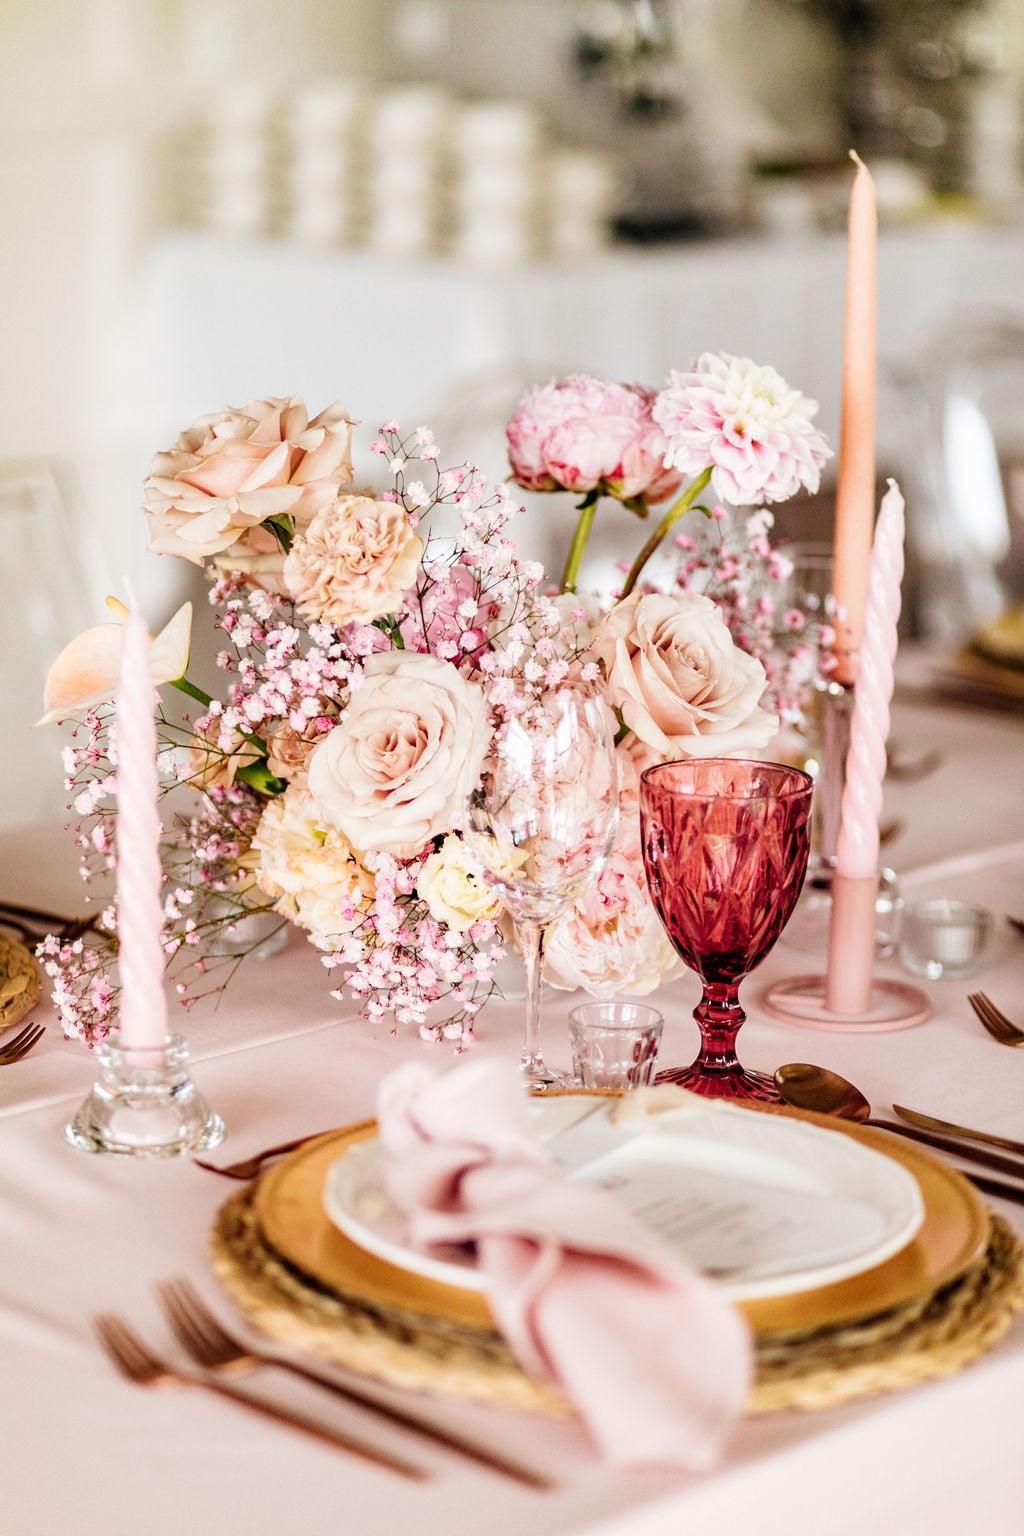 kwiaty w kompozycji - jako główny element dekoracyjny stołu na weselu